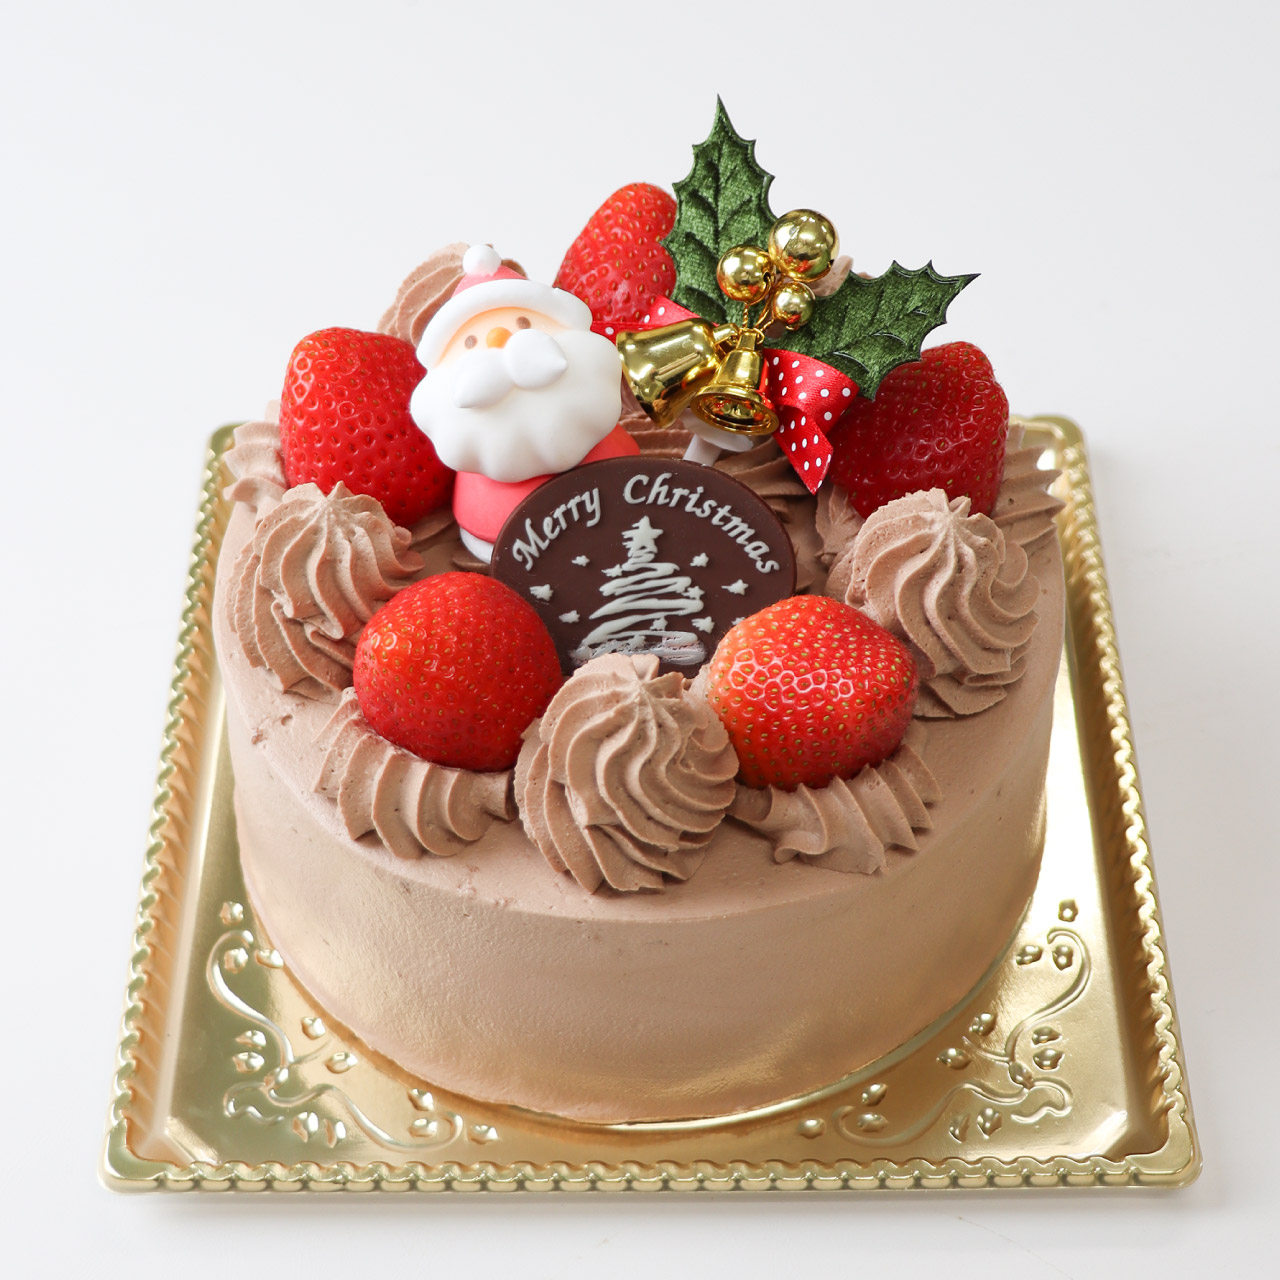 【12/21-25店頭受取】チョコレートクリスマス<21cm>